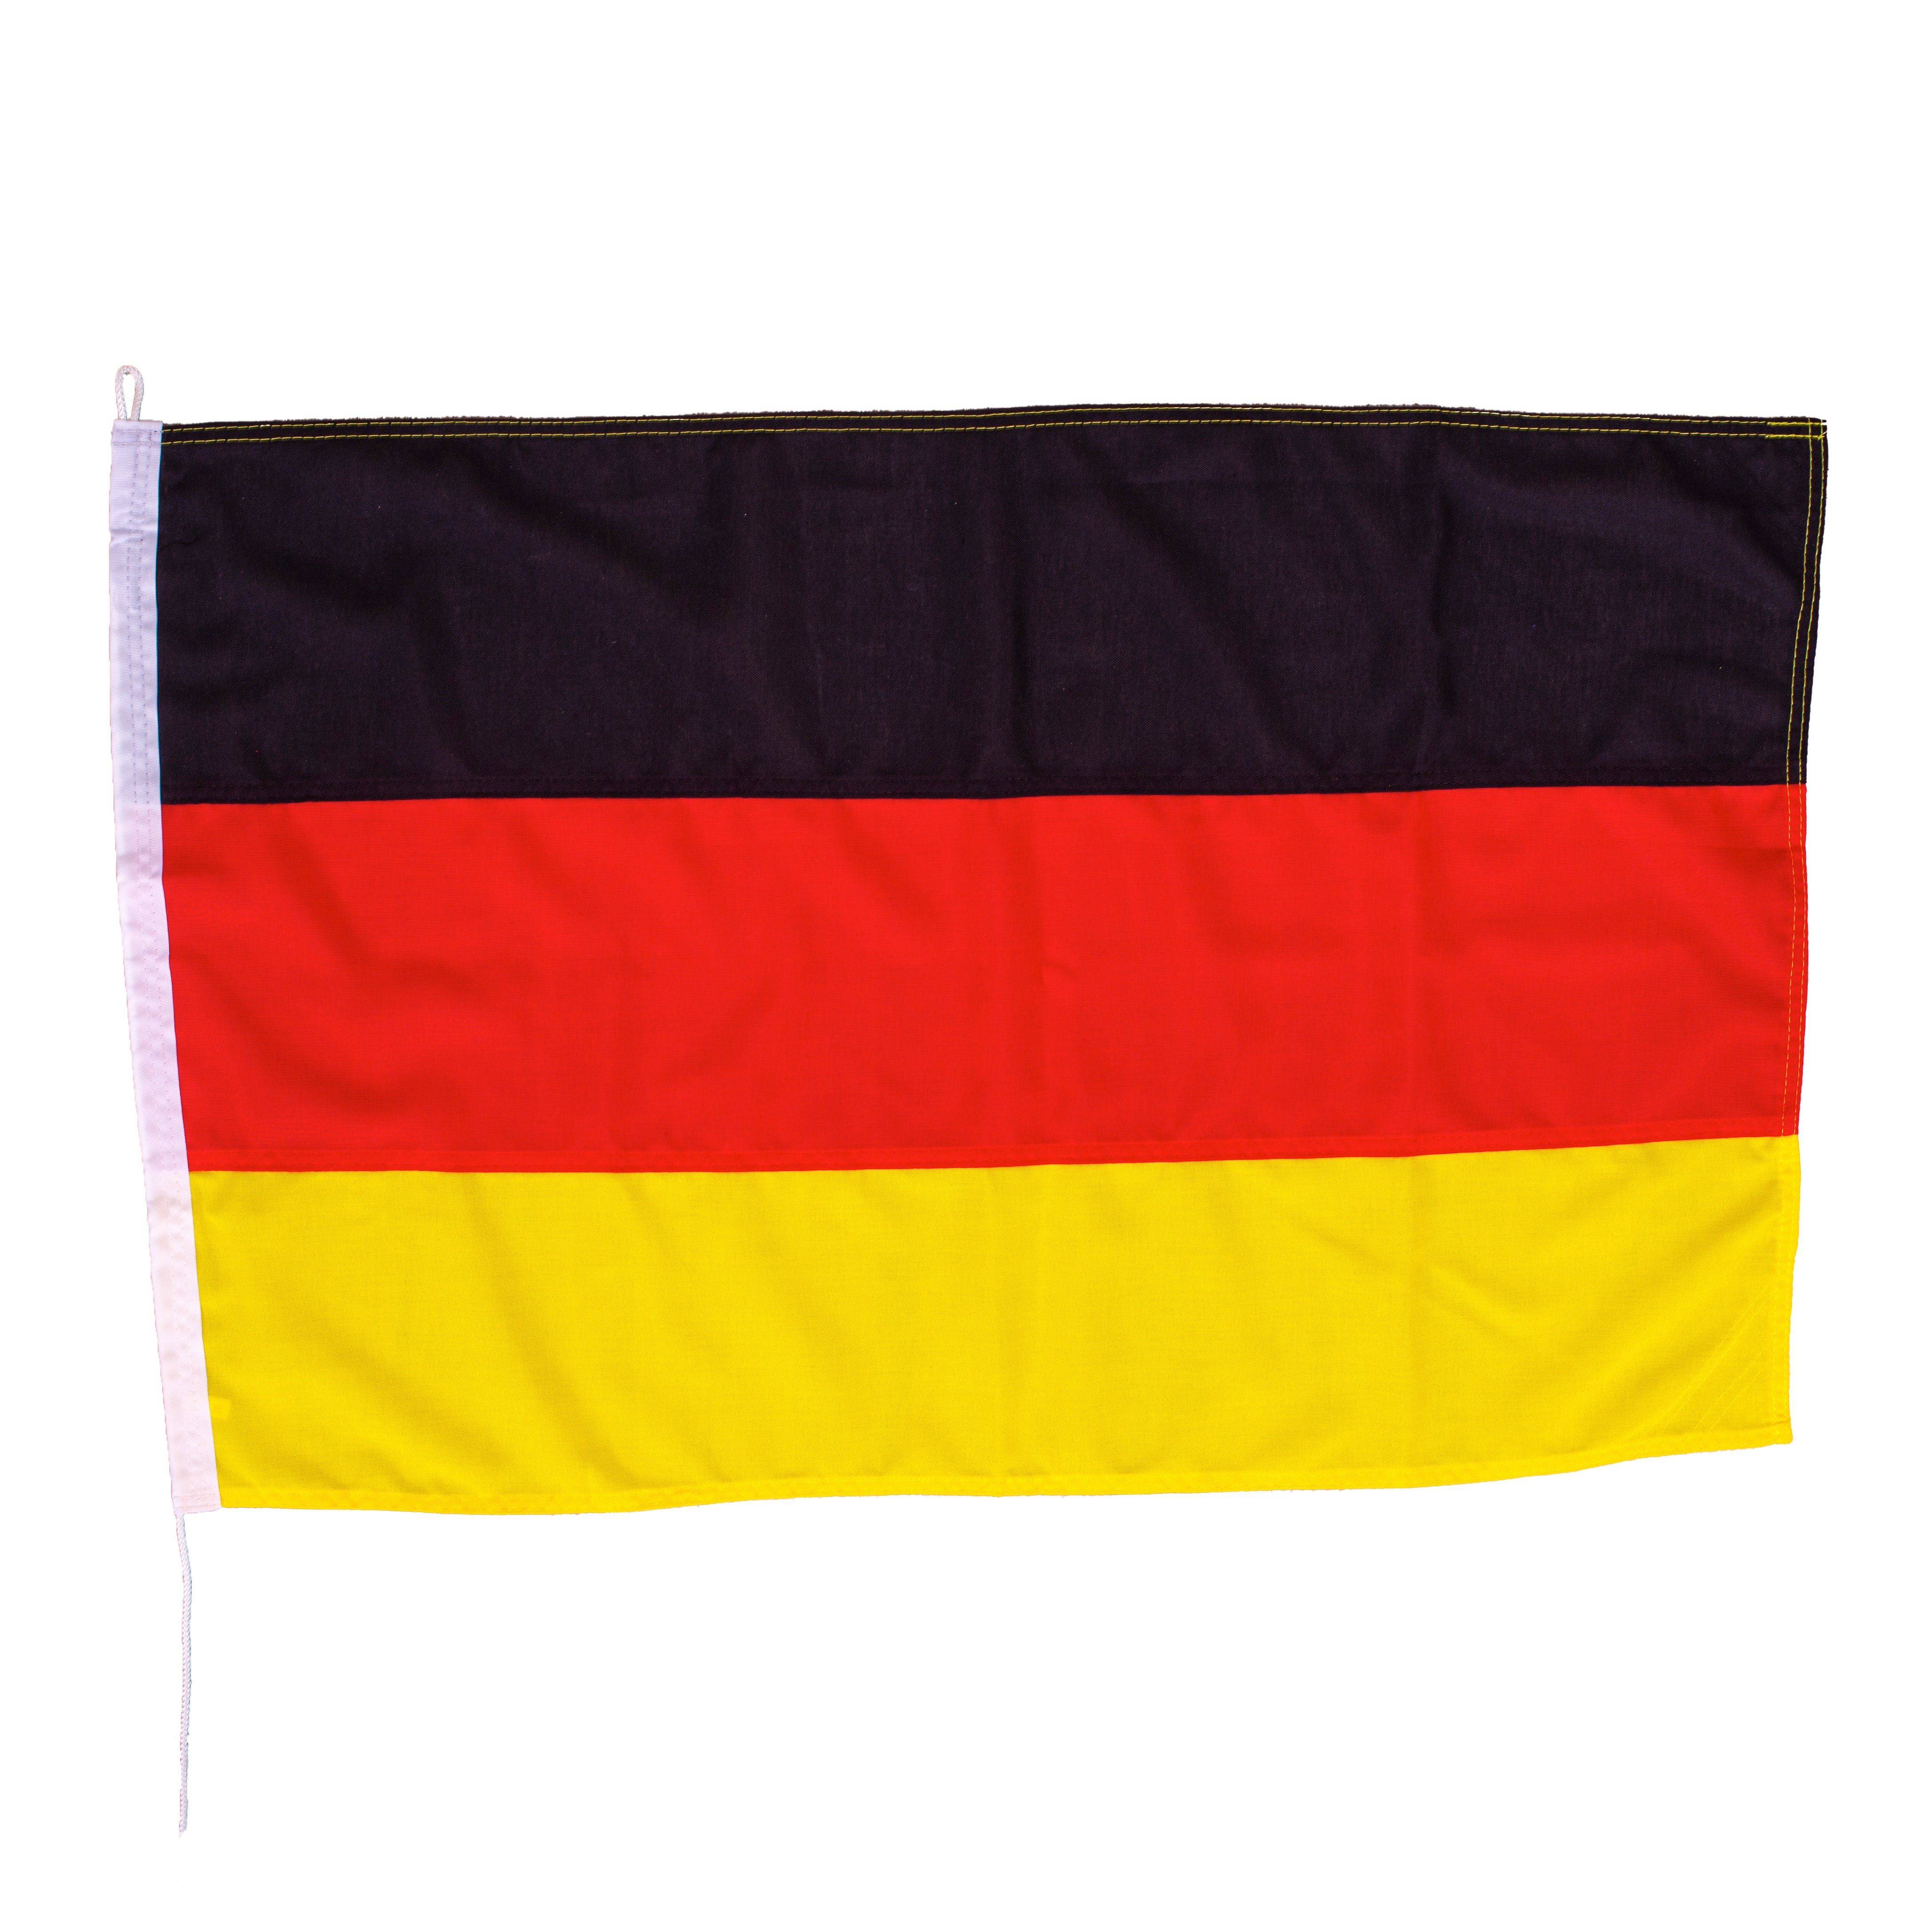 Flaggen Die - am Flagge Stoffgewicht, Schiffsflagge Deutschland netFlags 160 mit Markt. netFlags g/qm langlebigsten